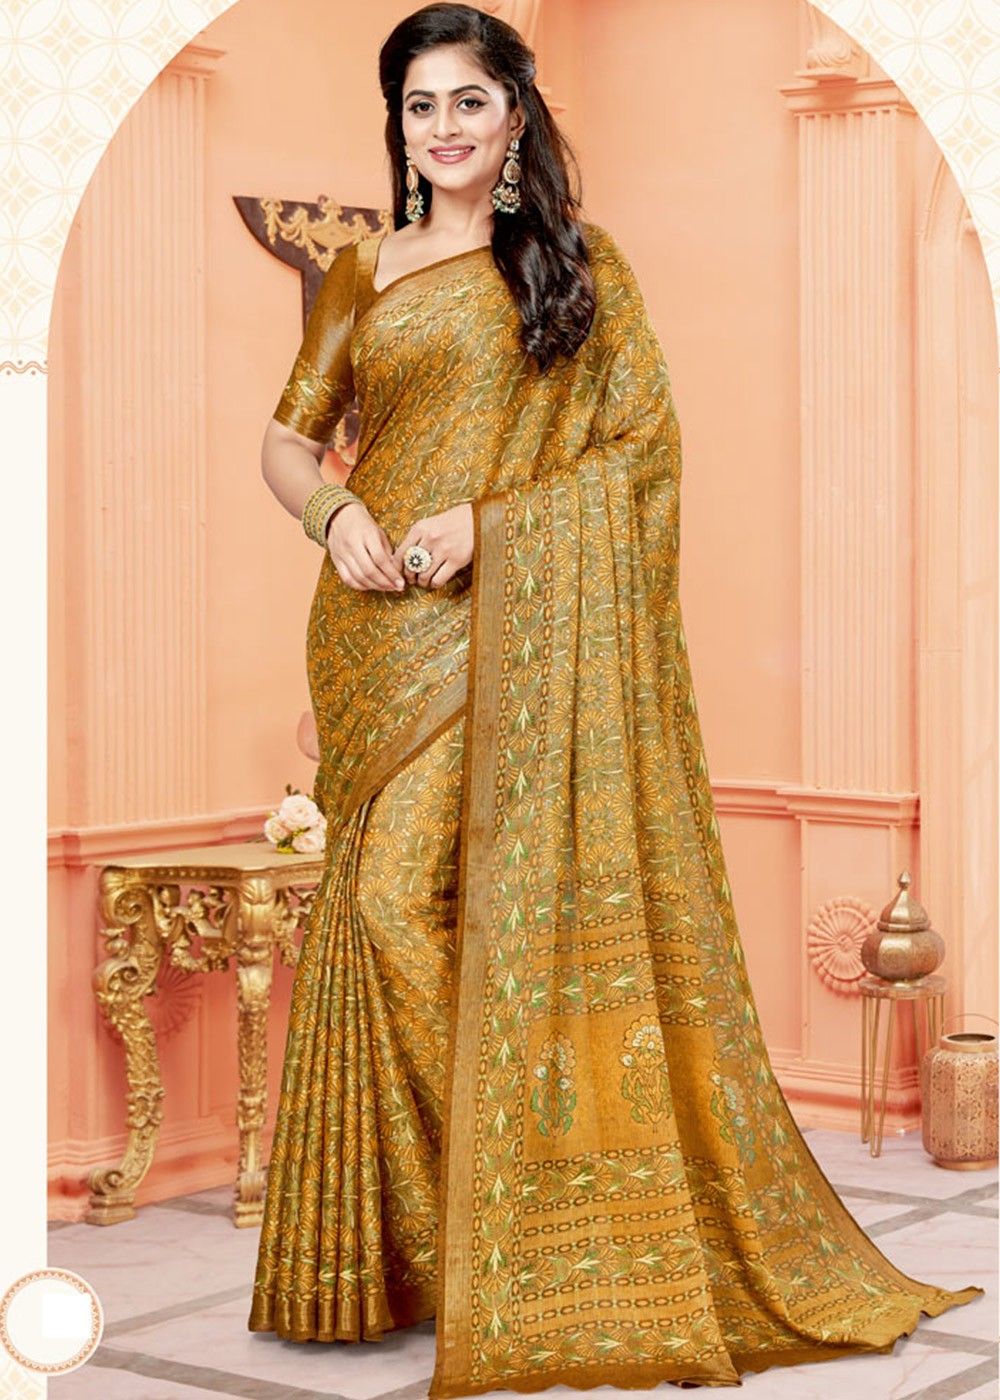 Aggregate 80+ golden print saree latest